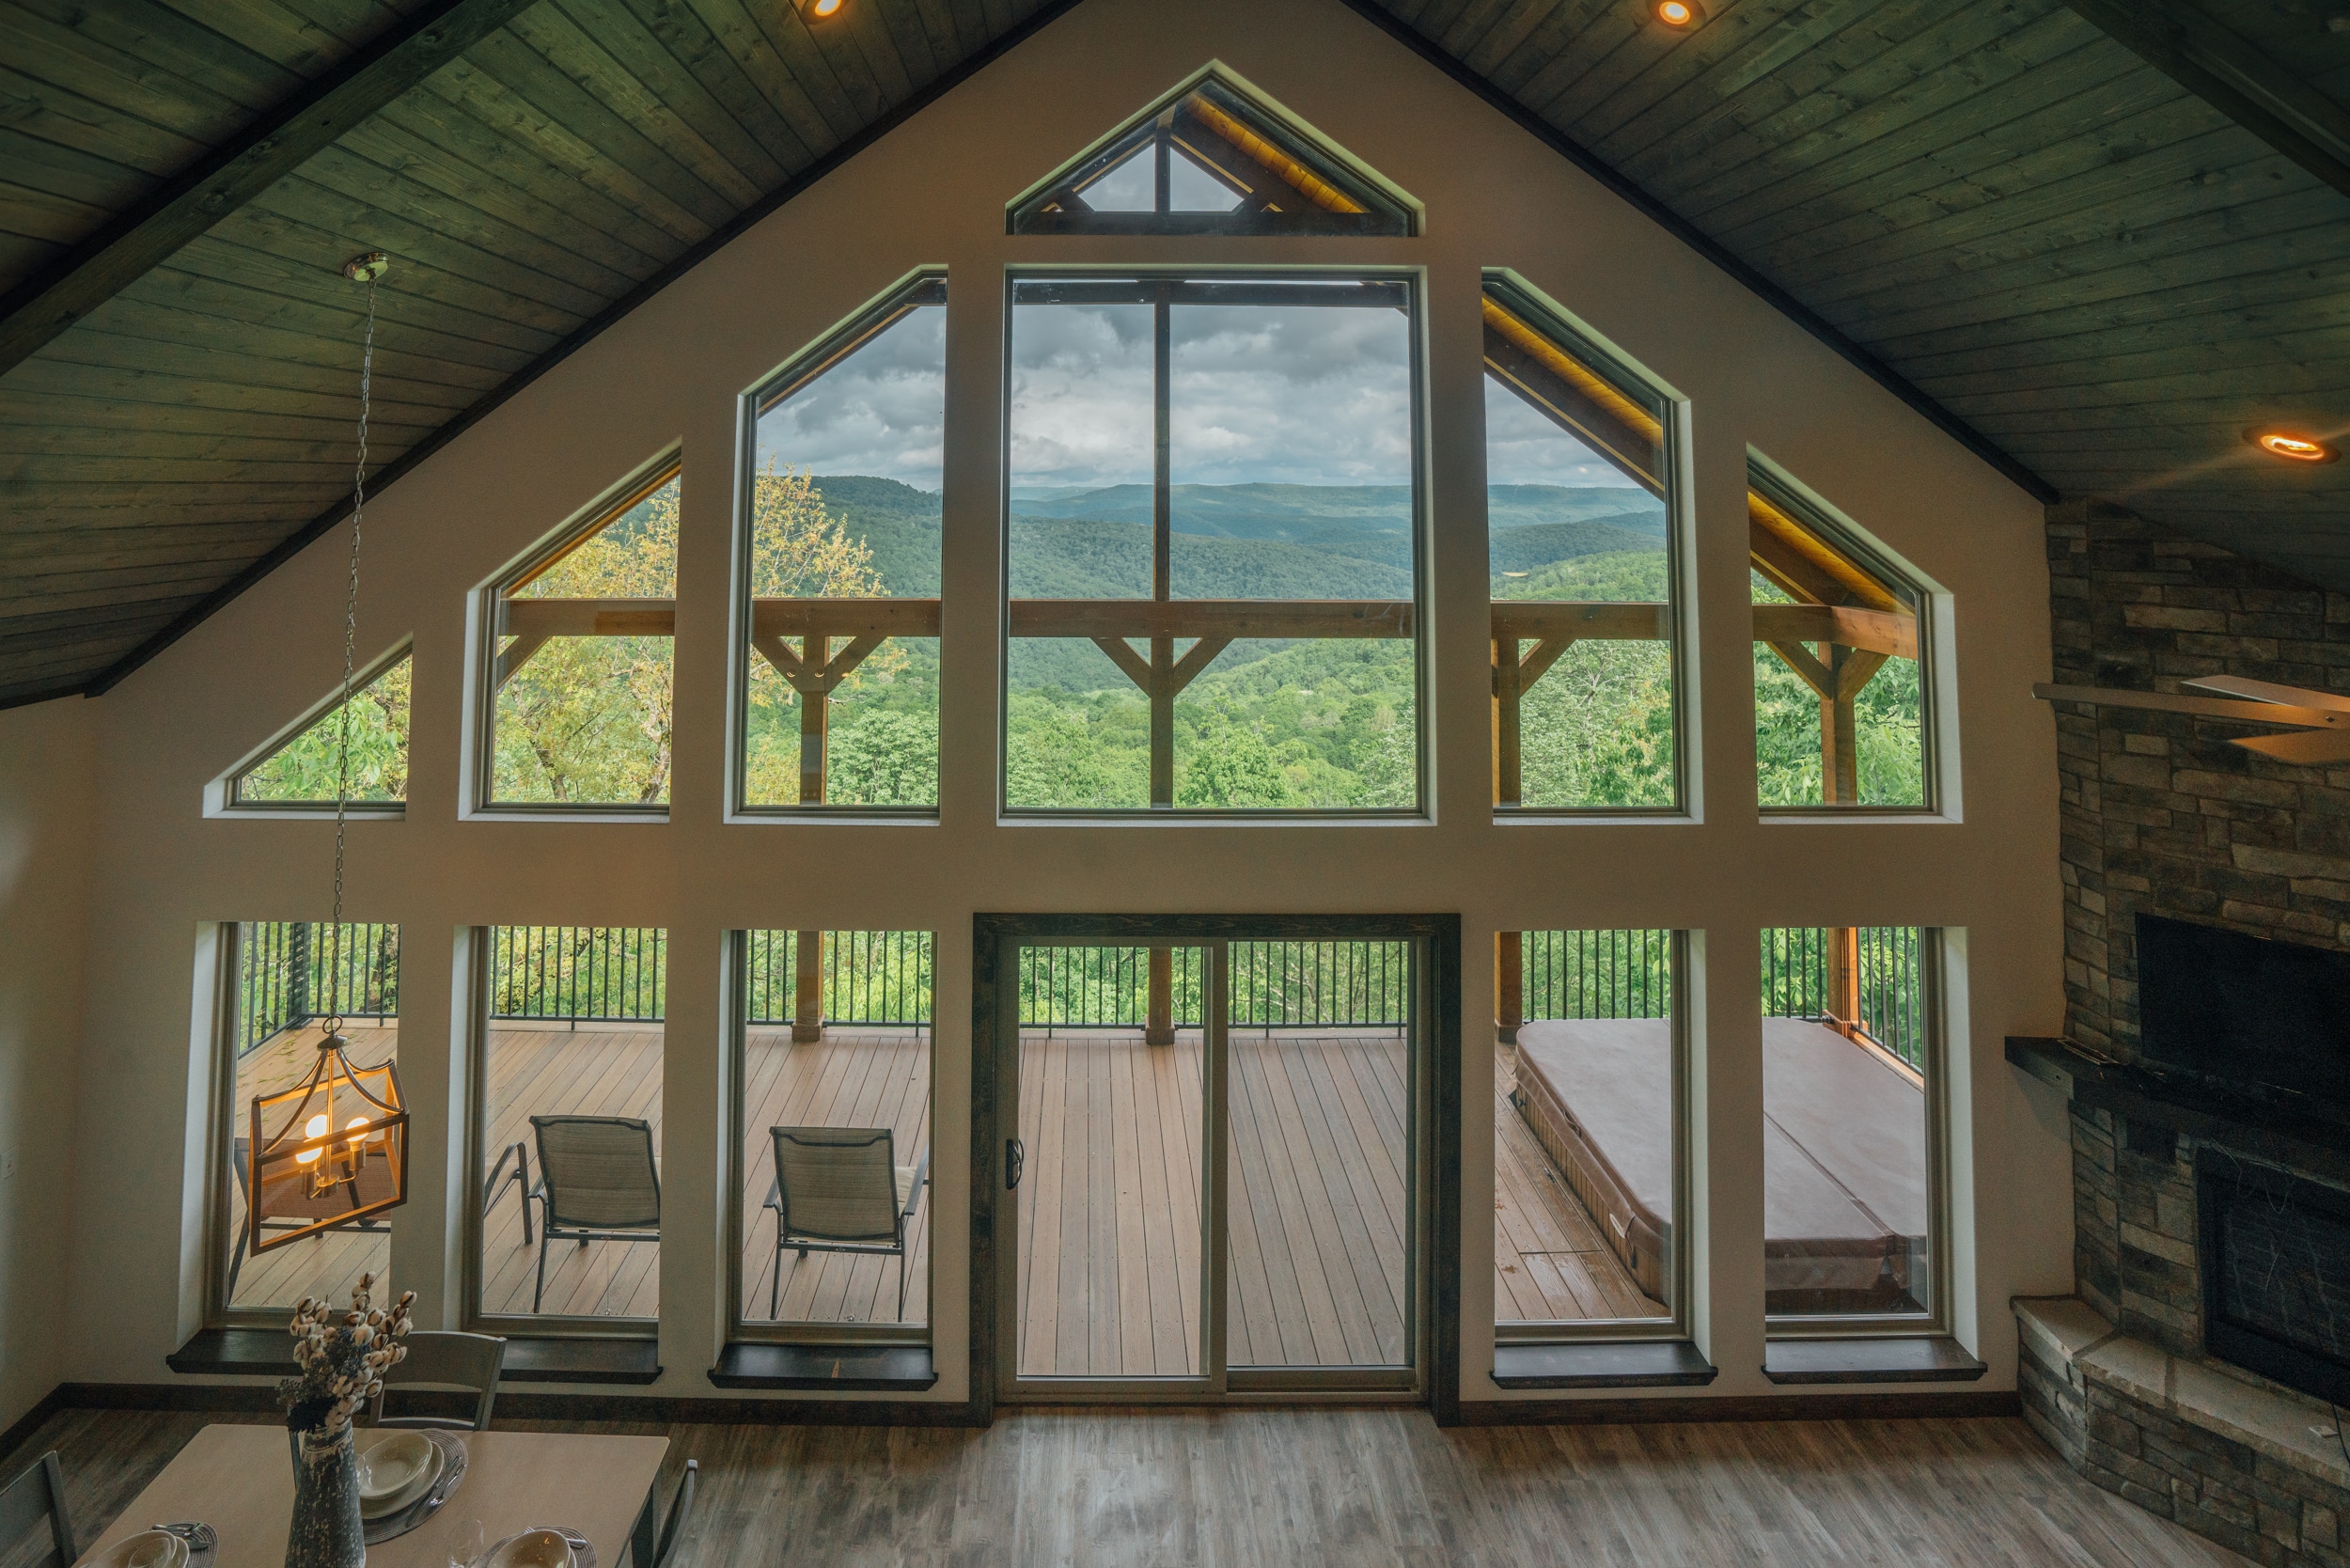 The Morning Glory Cabin | Buffalo Outdoor Center